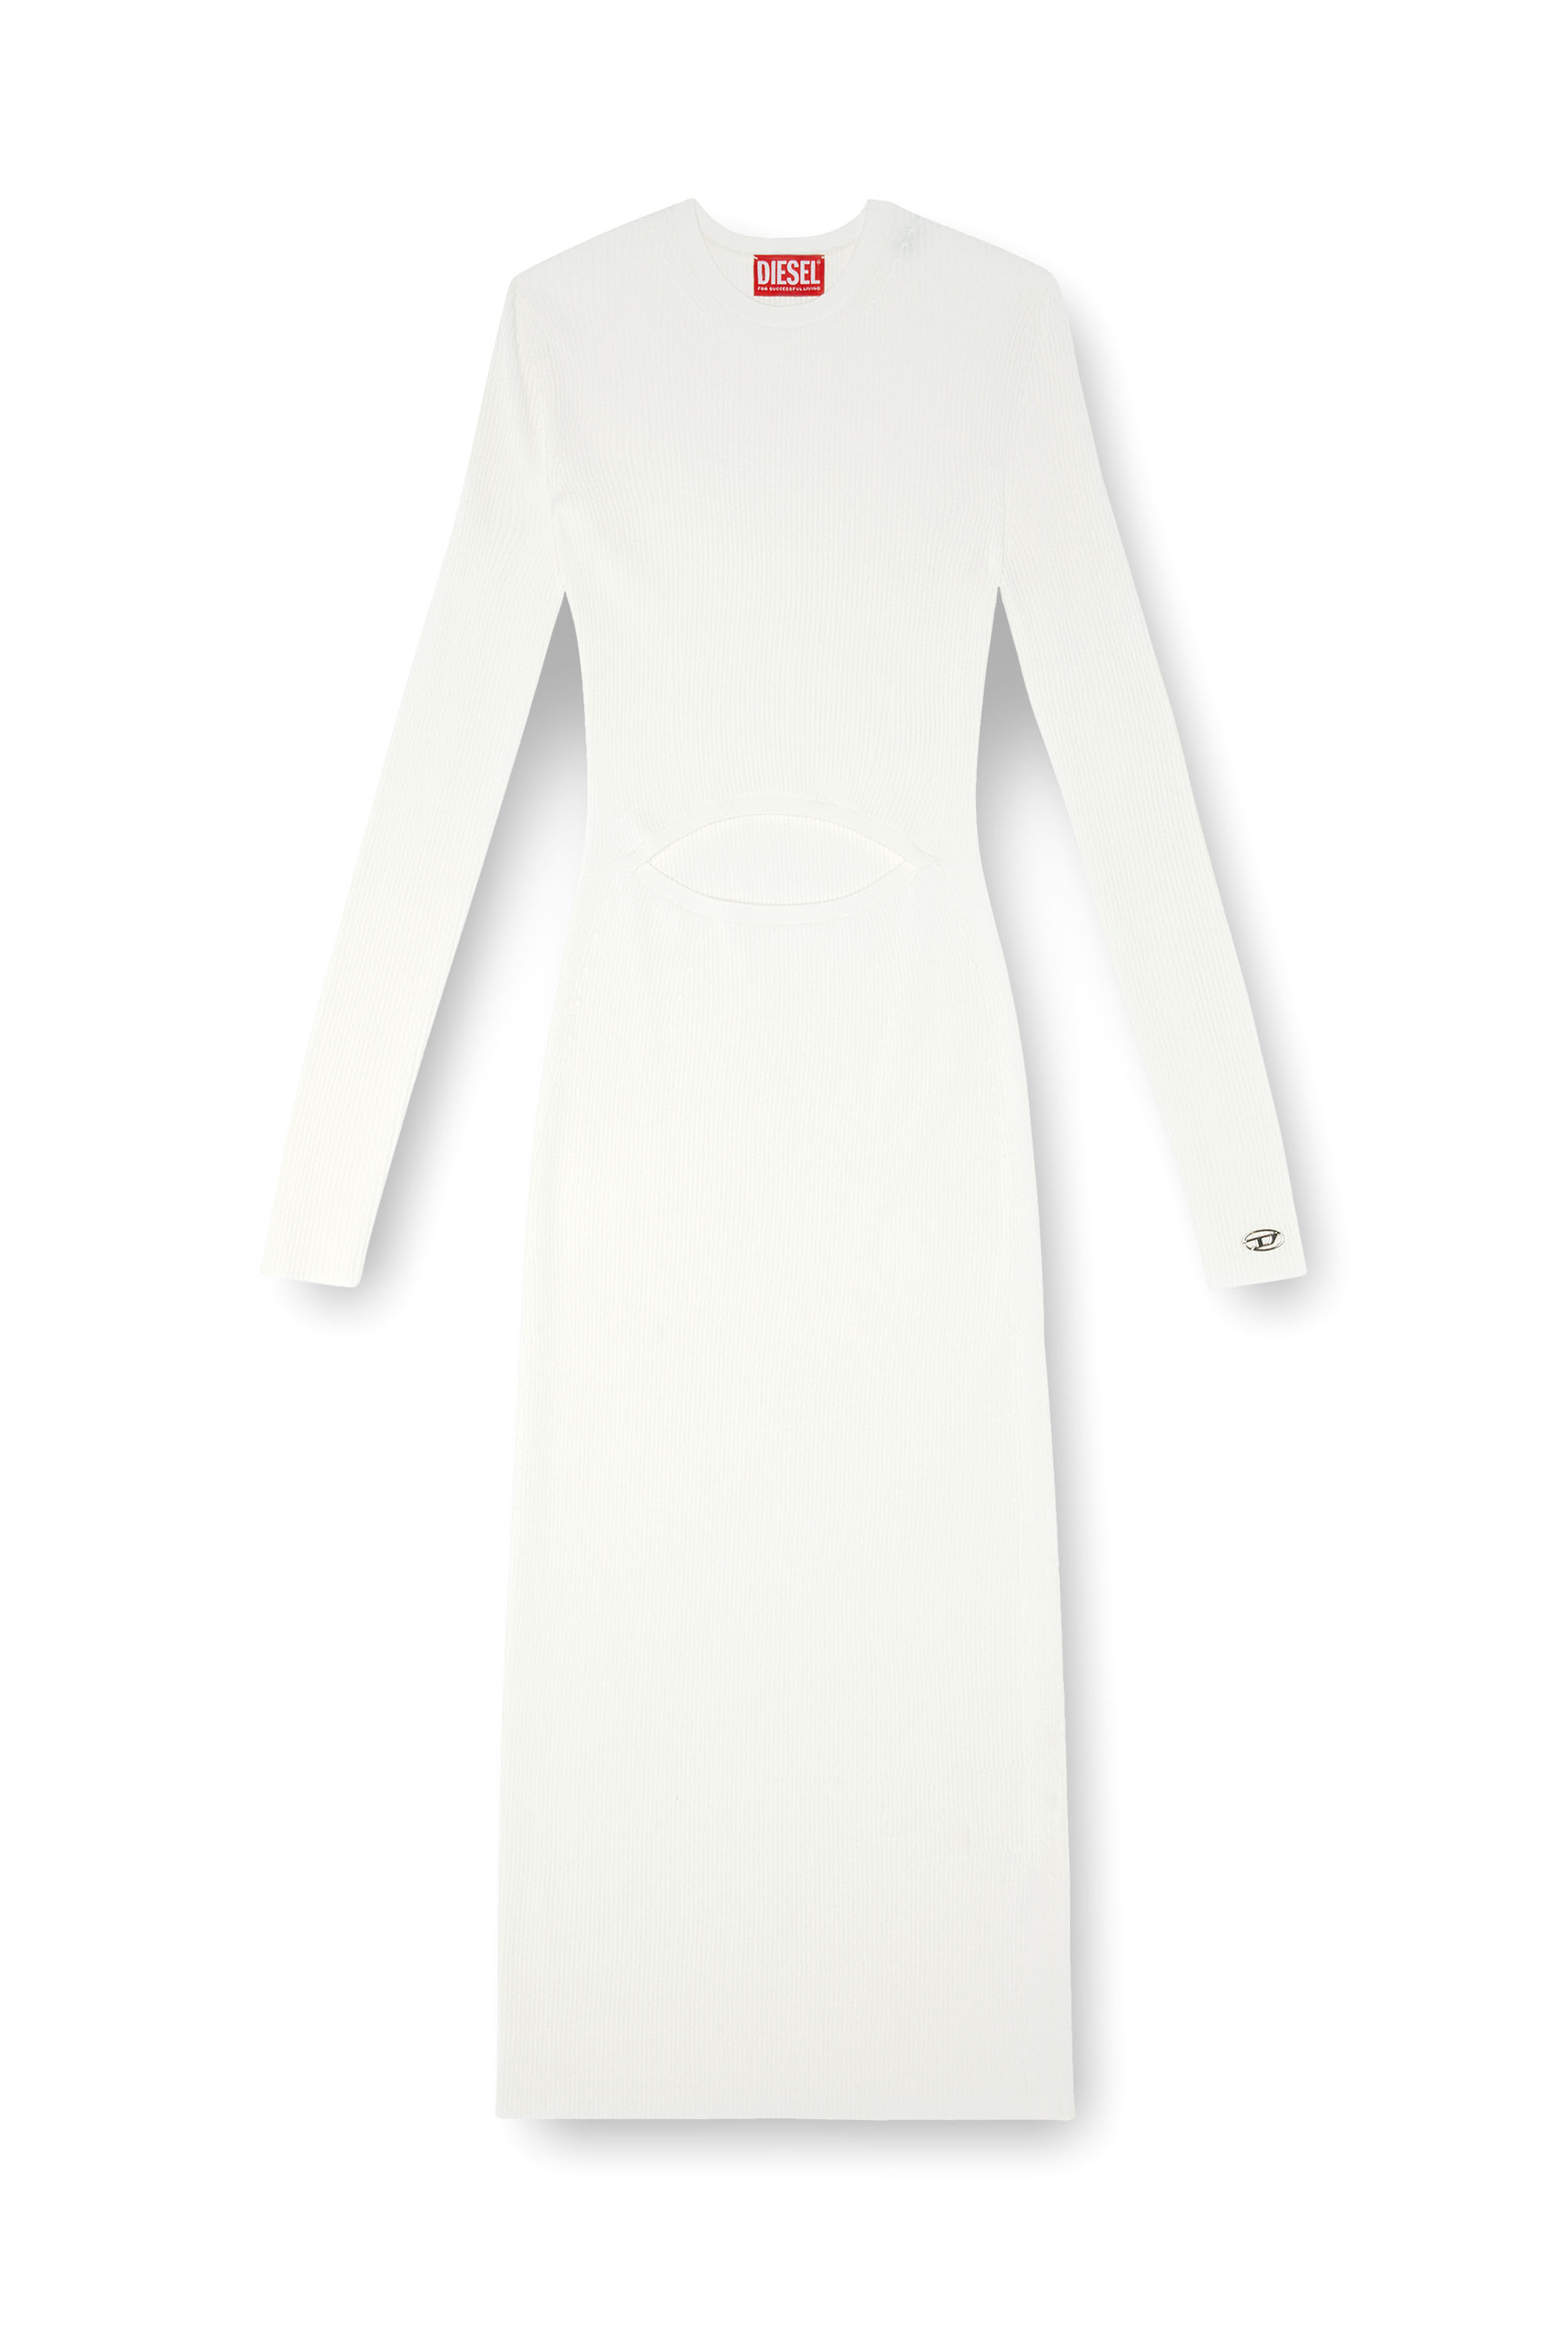 Diesel - M-PELAGOS, Damen Kleid aus Wollmischgewebe mit Cutout in Weiss - Image 4